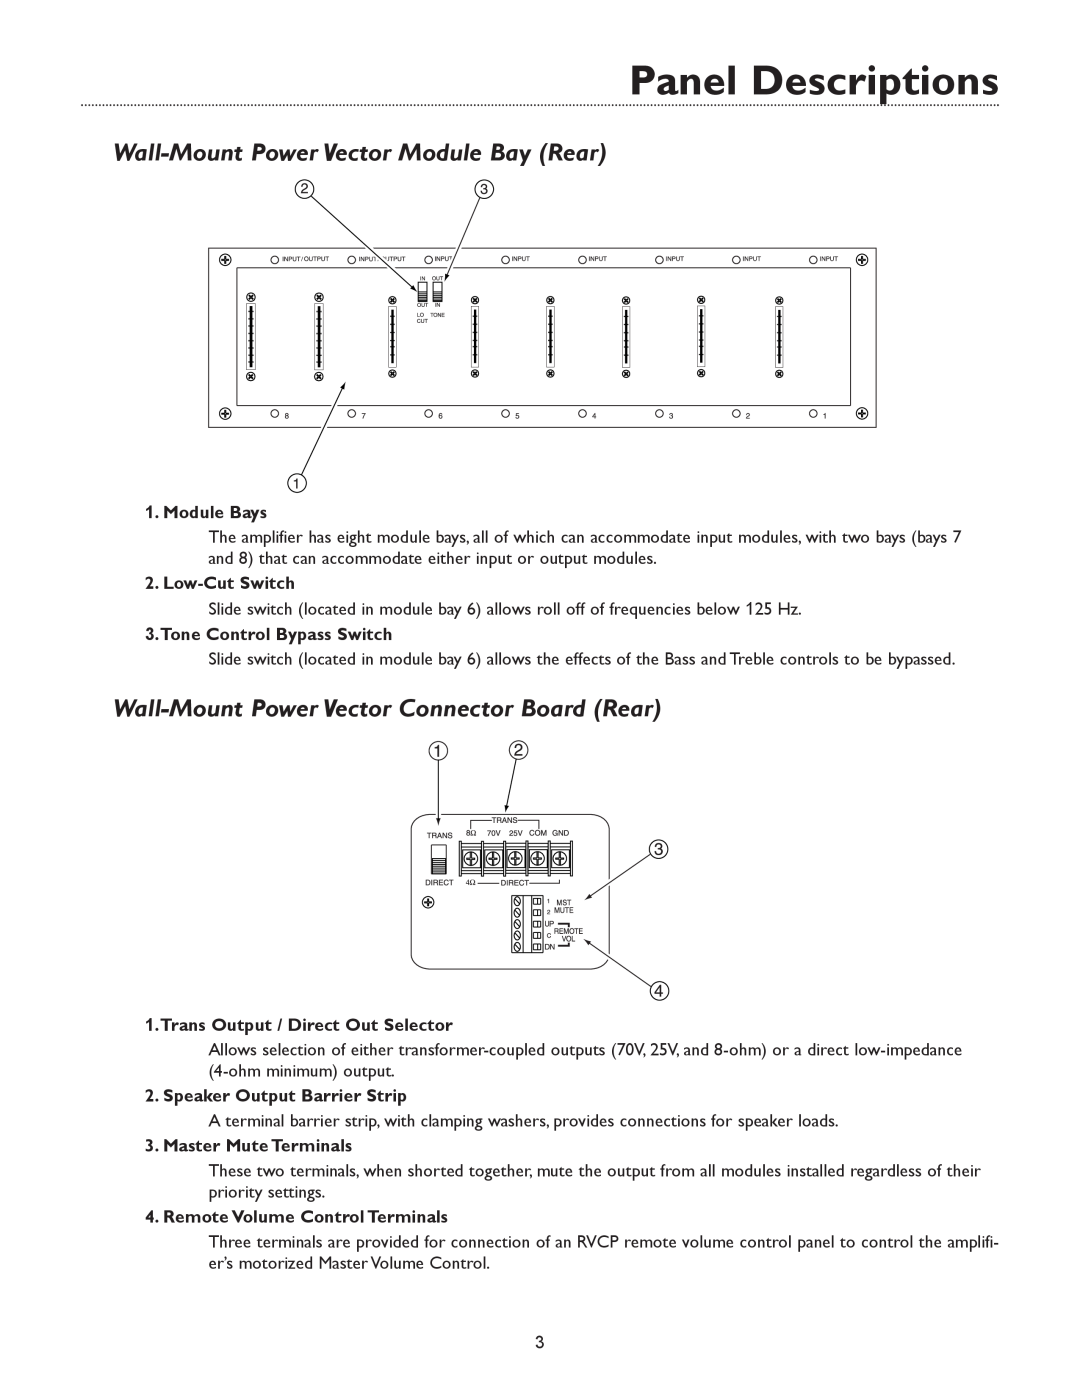 Bogen & WV250, WV100 Wall-MountPower Vector Module Bay Rear, Wall-MountPower Vector Connector Board Rear, Module Bays 